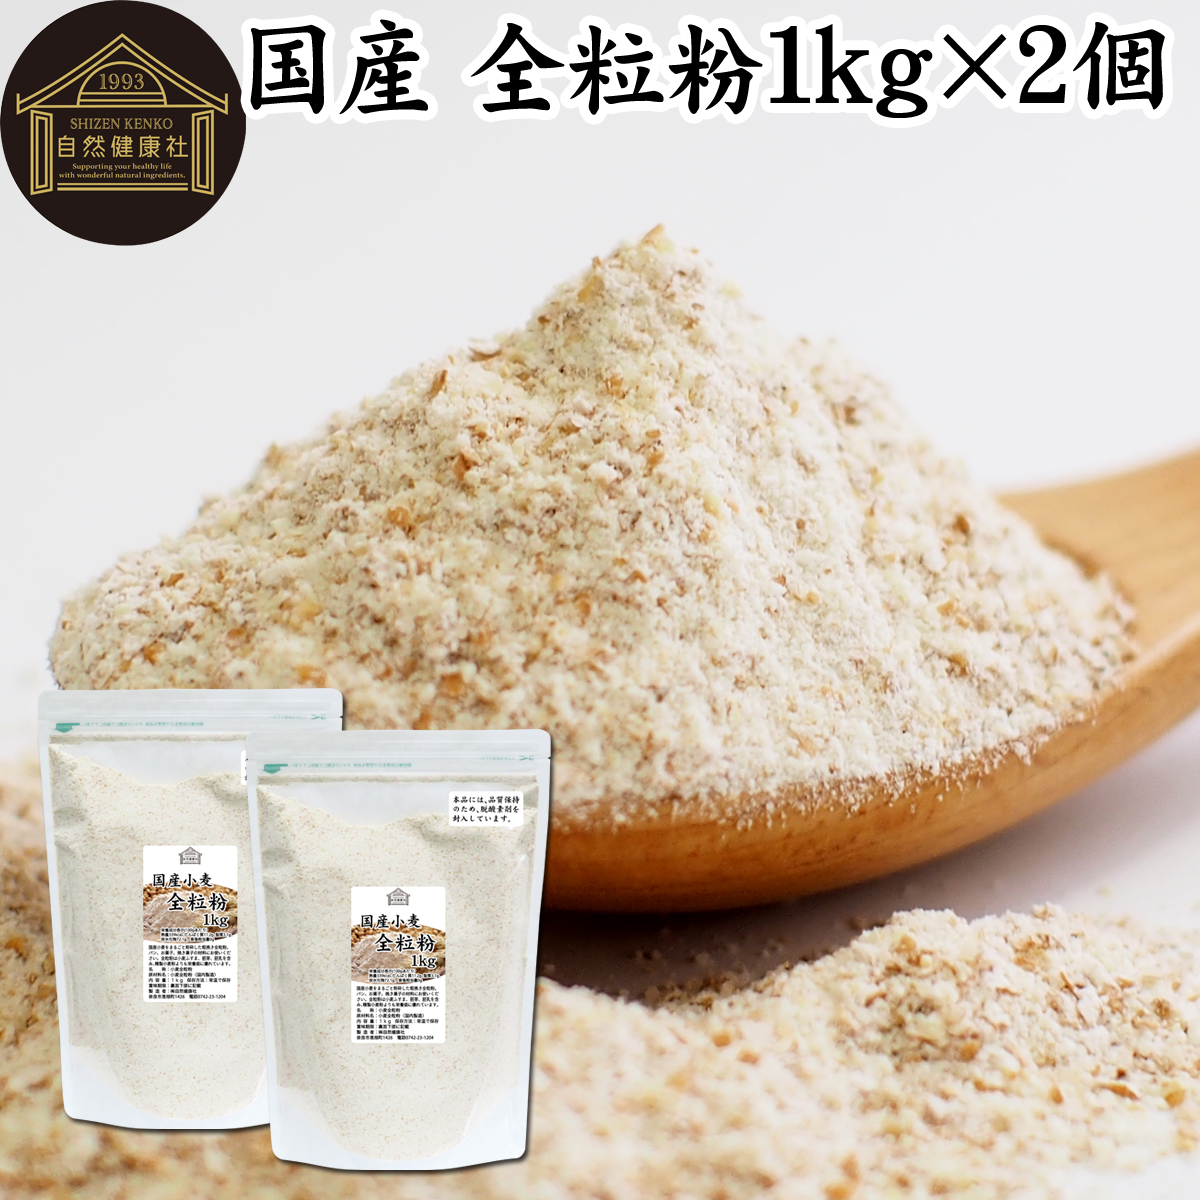 自然健康社 国産小麦 全粒粉 1kg×2個の商品画像